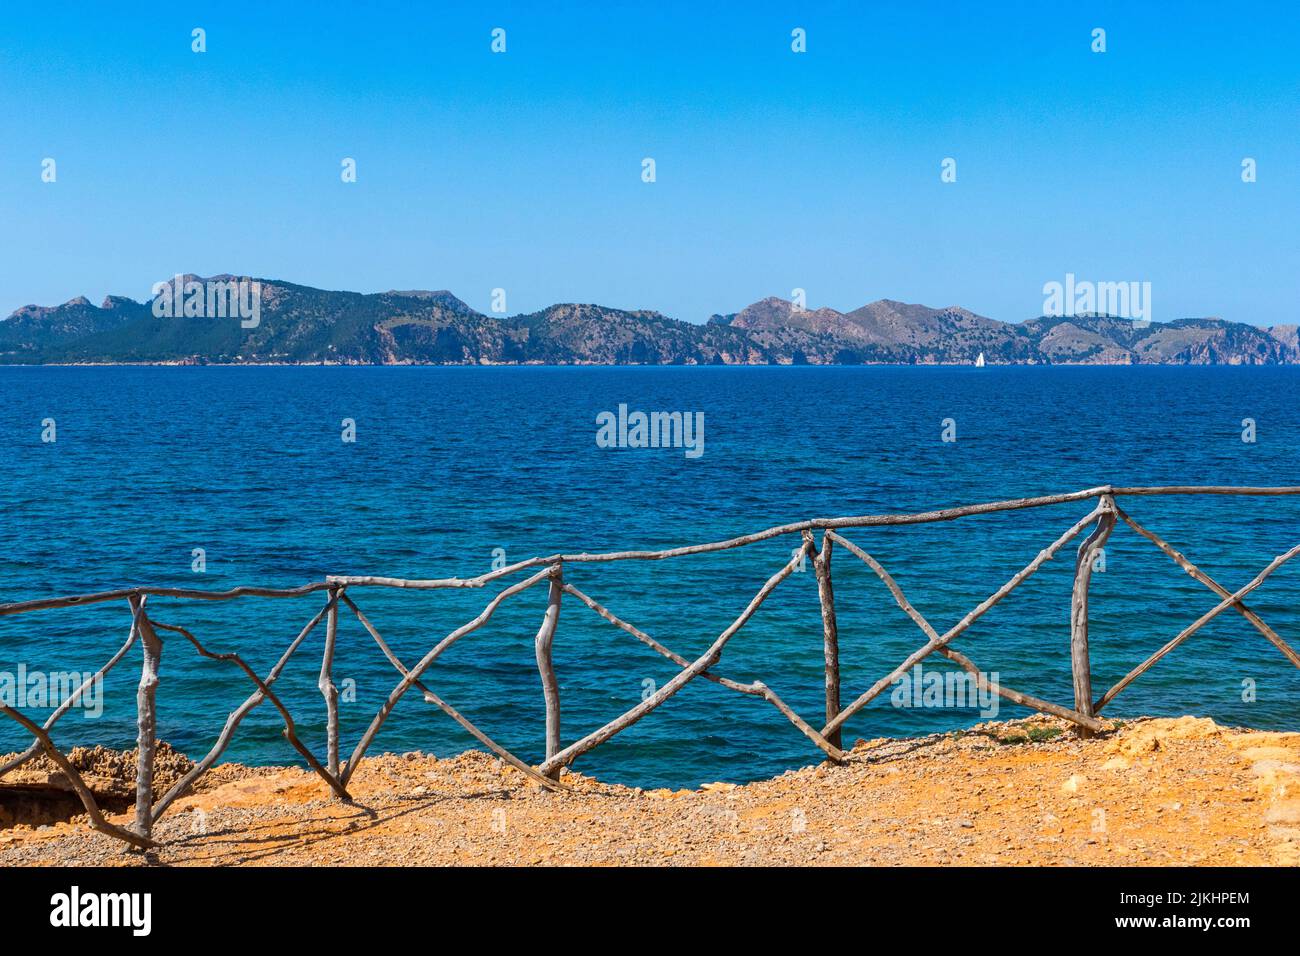 Coast near S'Illot, peninsula Victoria near Alcudia, view to Cap Formentor, Majorca, Balearic Islands, Spain Stock Photo